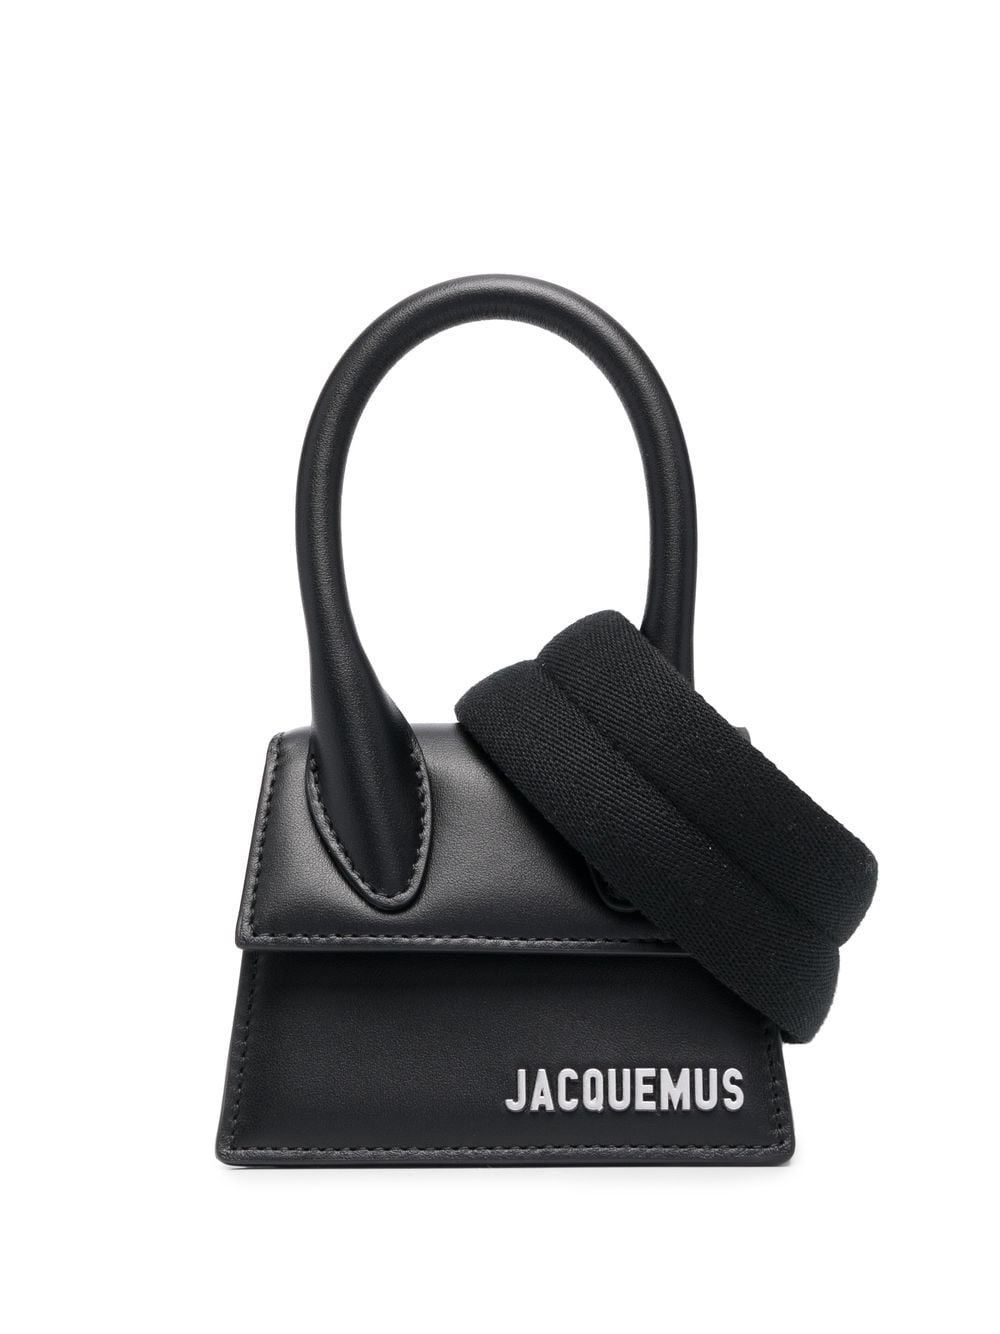 Jacquemus 'le Chiquito' Bag In Nero | ModeSens